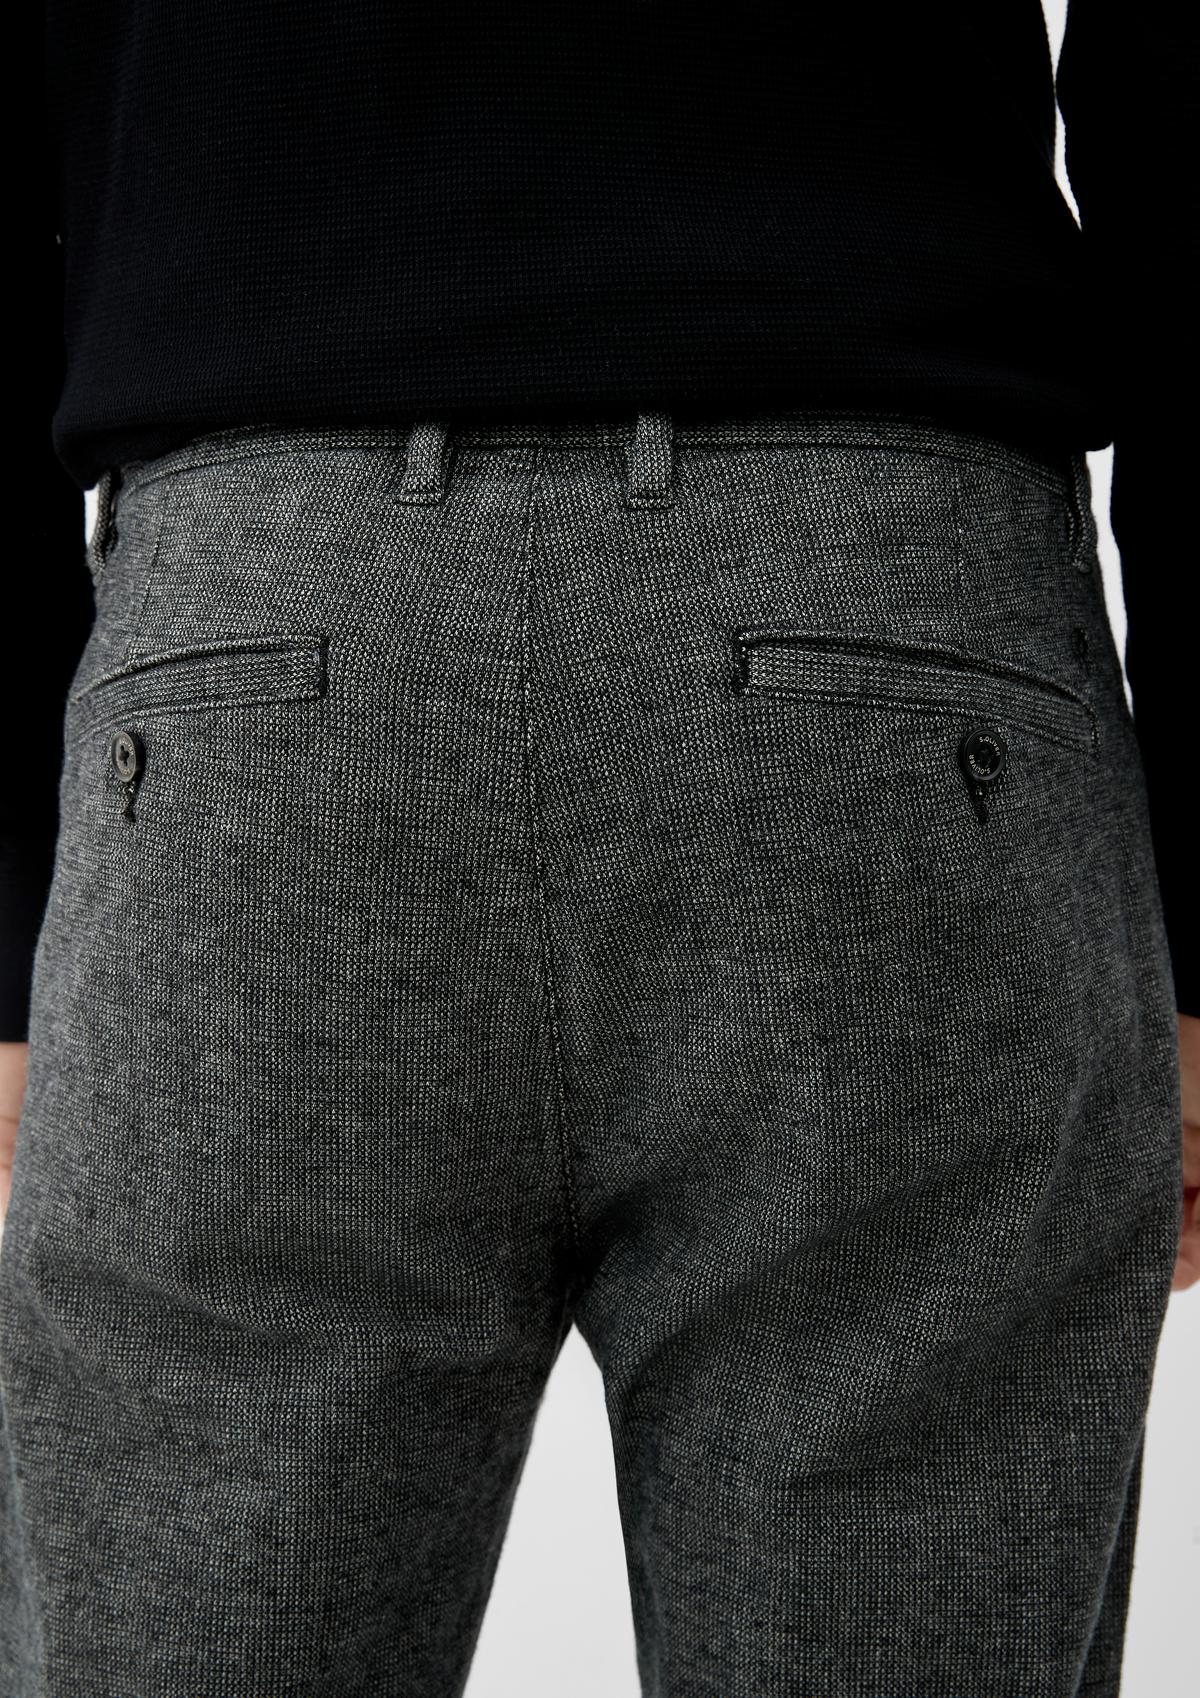 s.Oliver Relaxed: joggingové kalhoty se vzorem po celé ploše